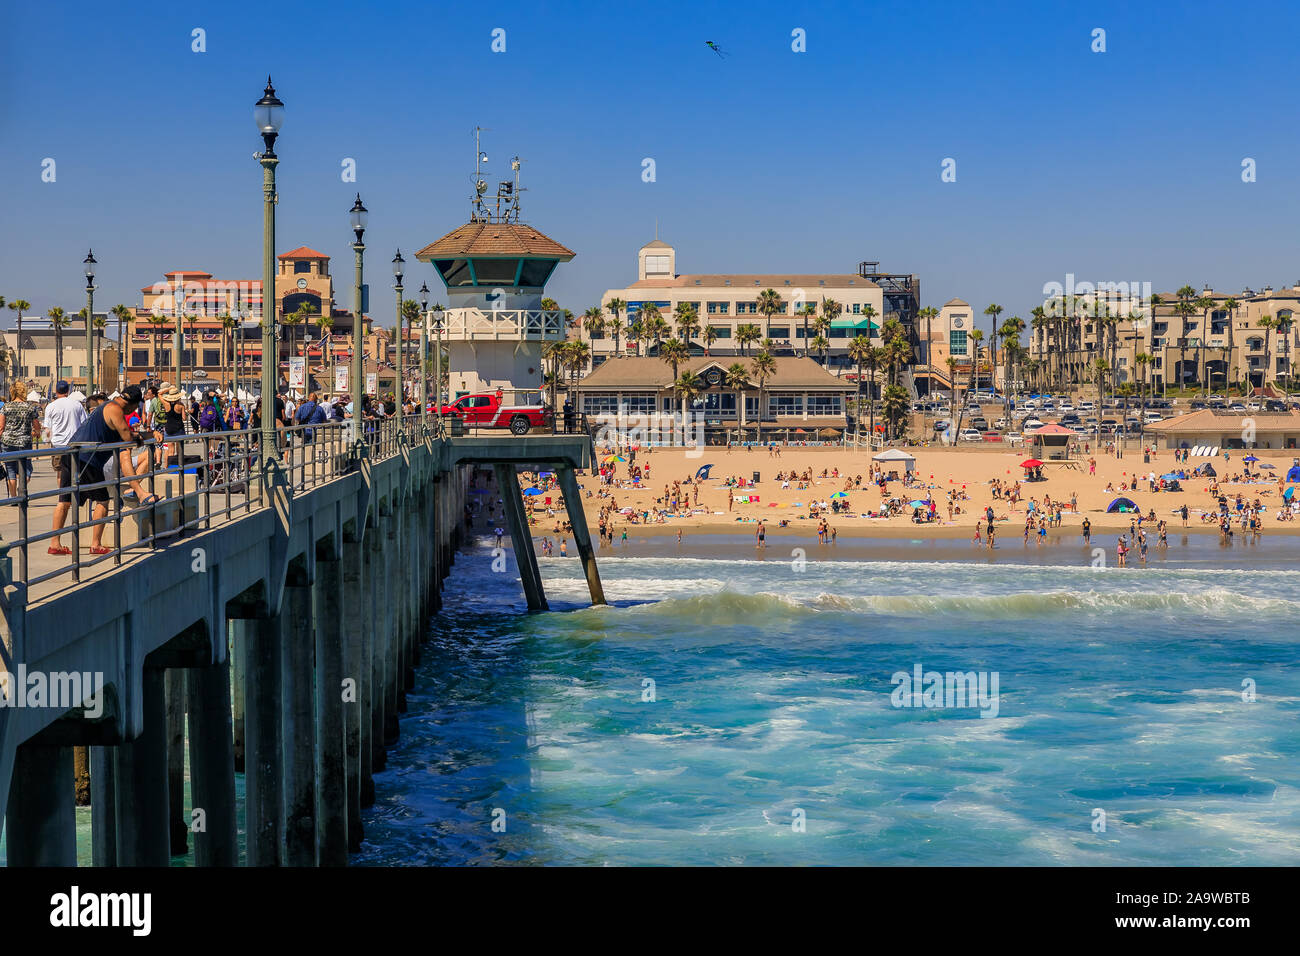 Huntington Beach, Vereinigte Staaten - 03 Juli, 2017: den Pier, den Pazifischen Ozean und den Strand von Surf City Huntington Beach, berühmte touristische Destination in Kalifornien Stockfoto